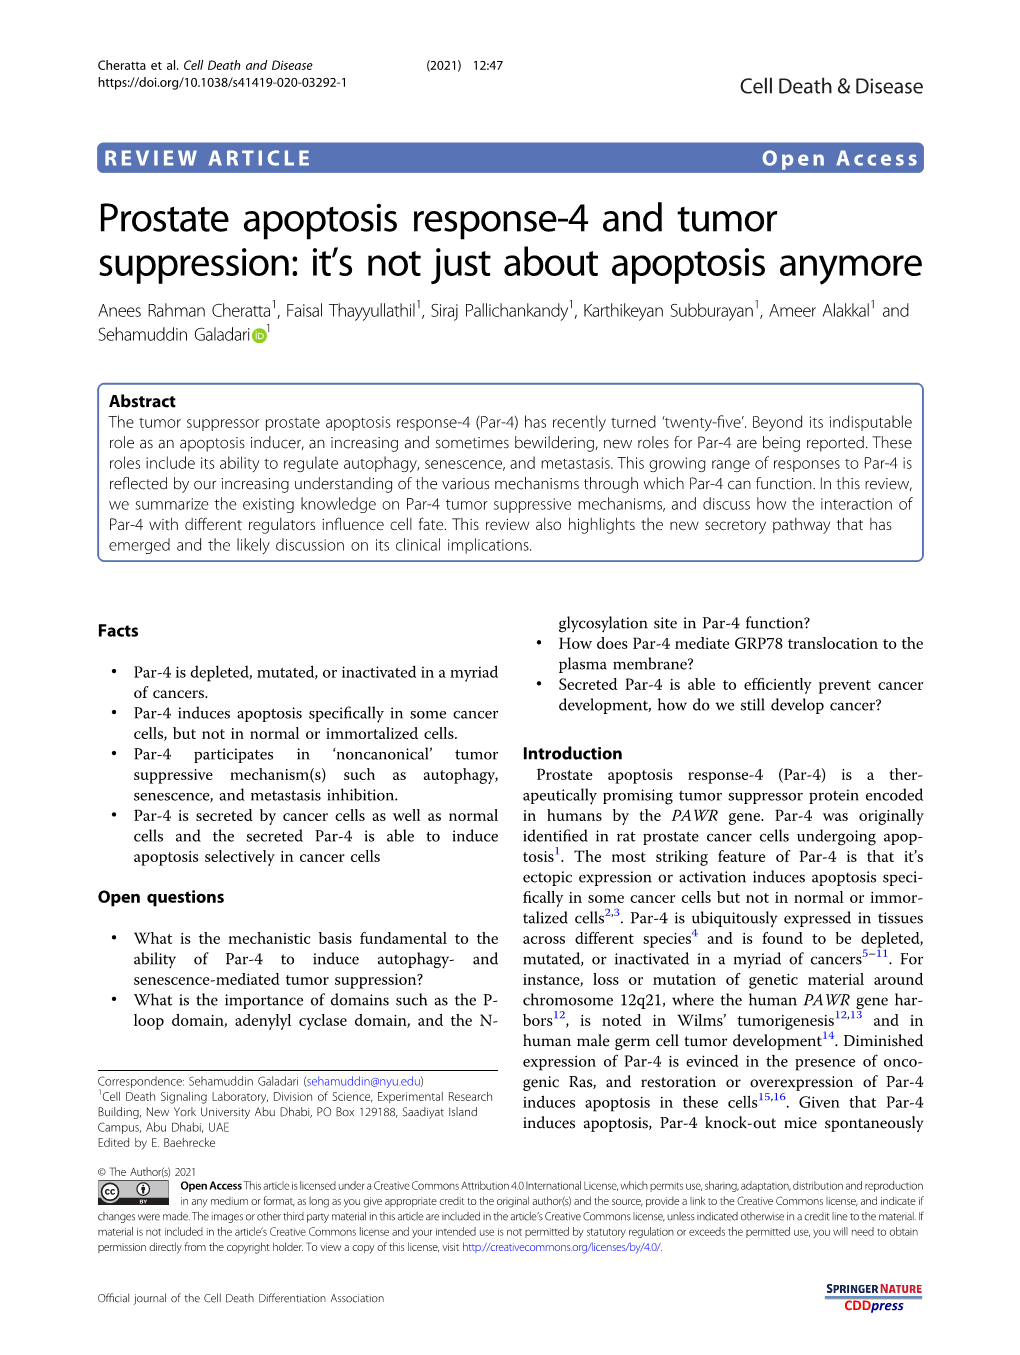 Prostate Apoptosis Response-4 and Tumor Suppression